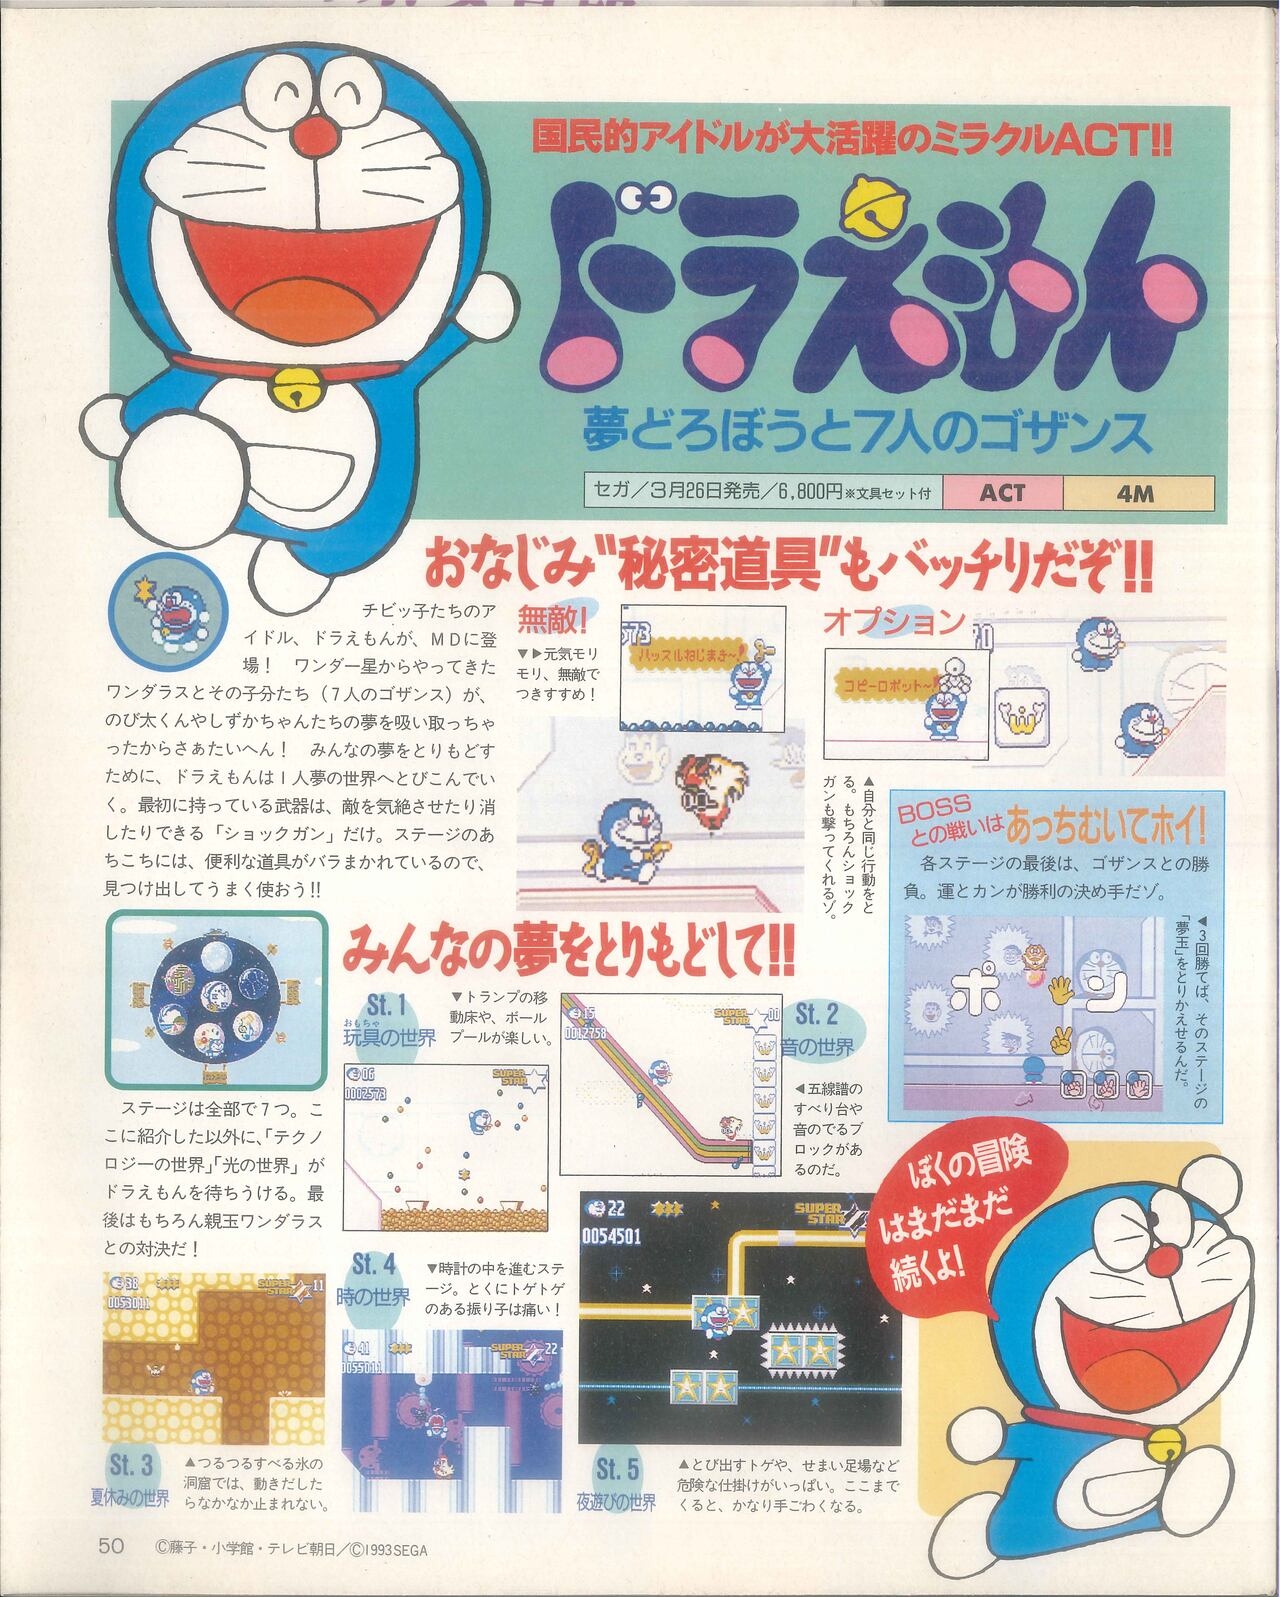 Dengeki Mega Drive Vol.2 (Sega Genesis) (April 1993) 25